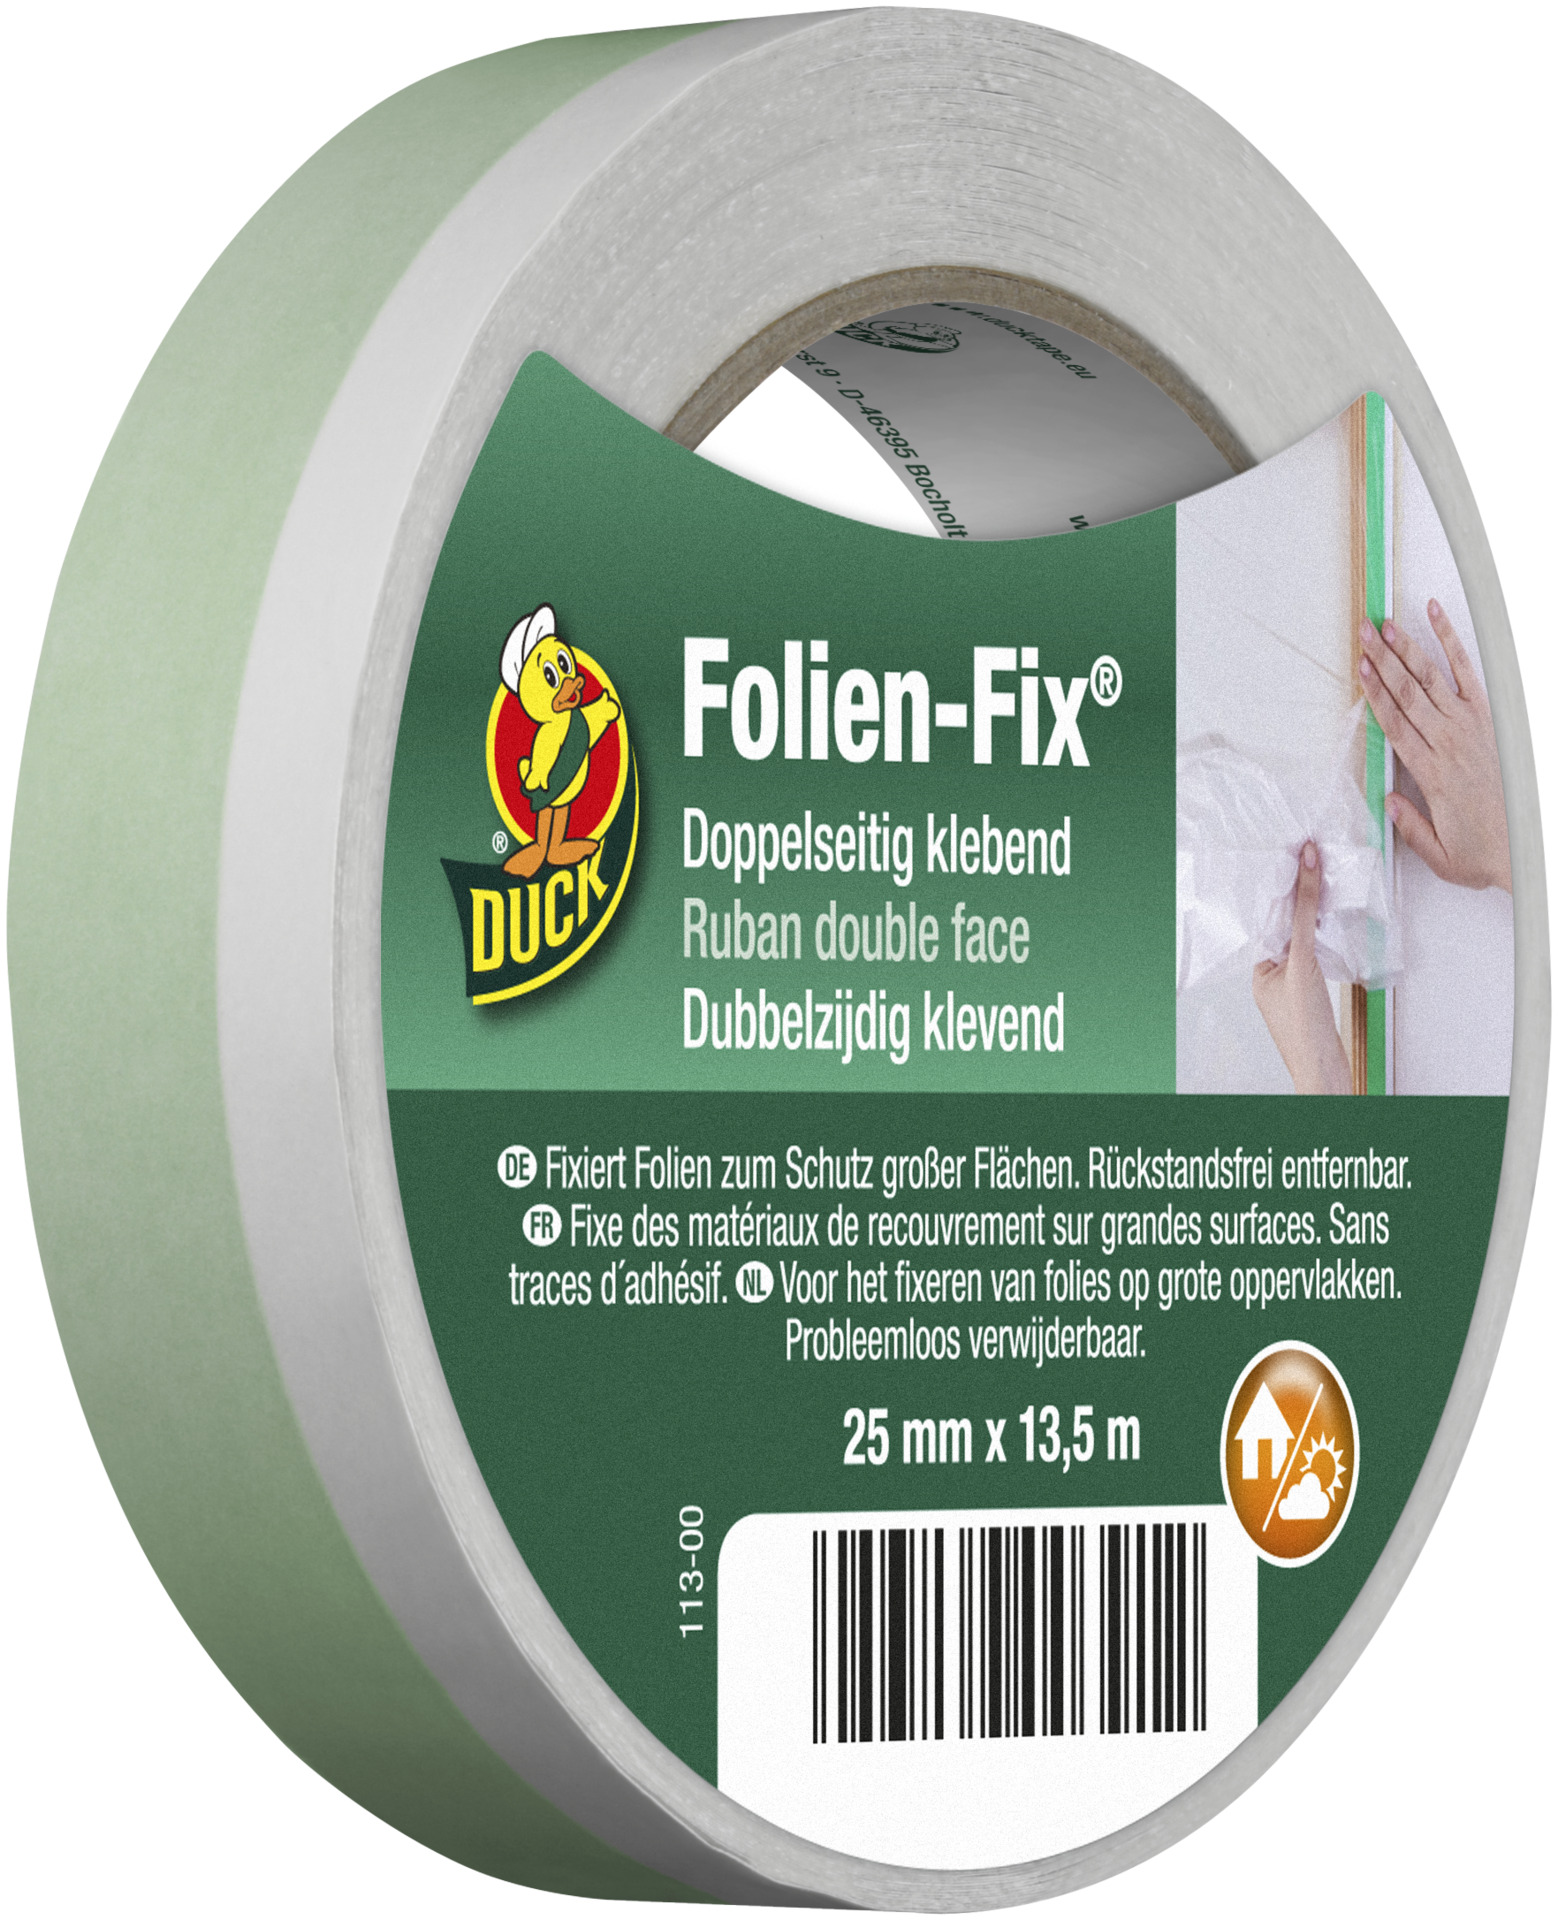 Kip Folien-Fix